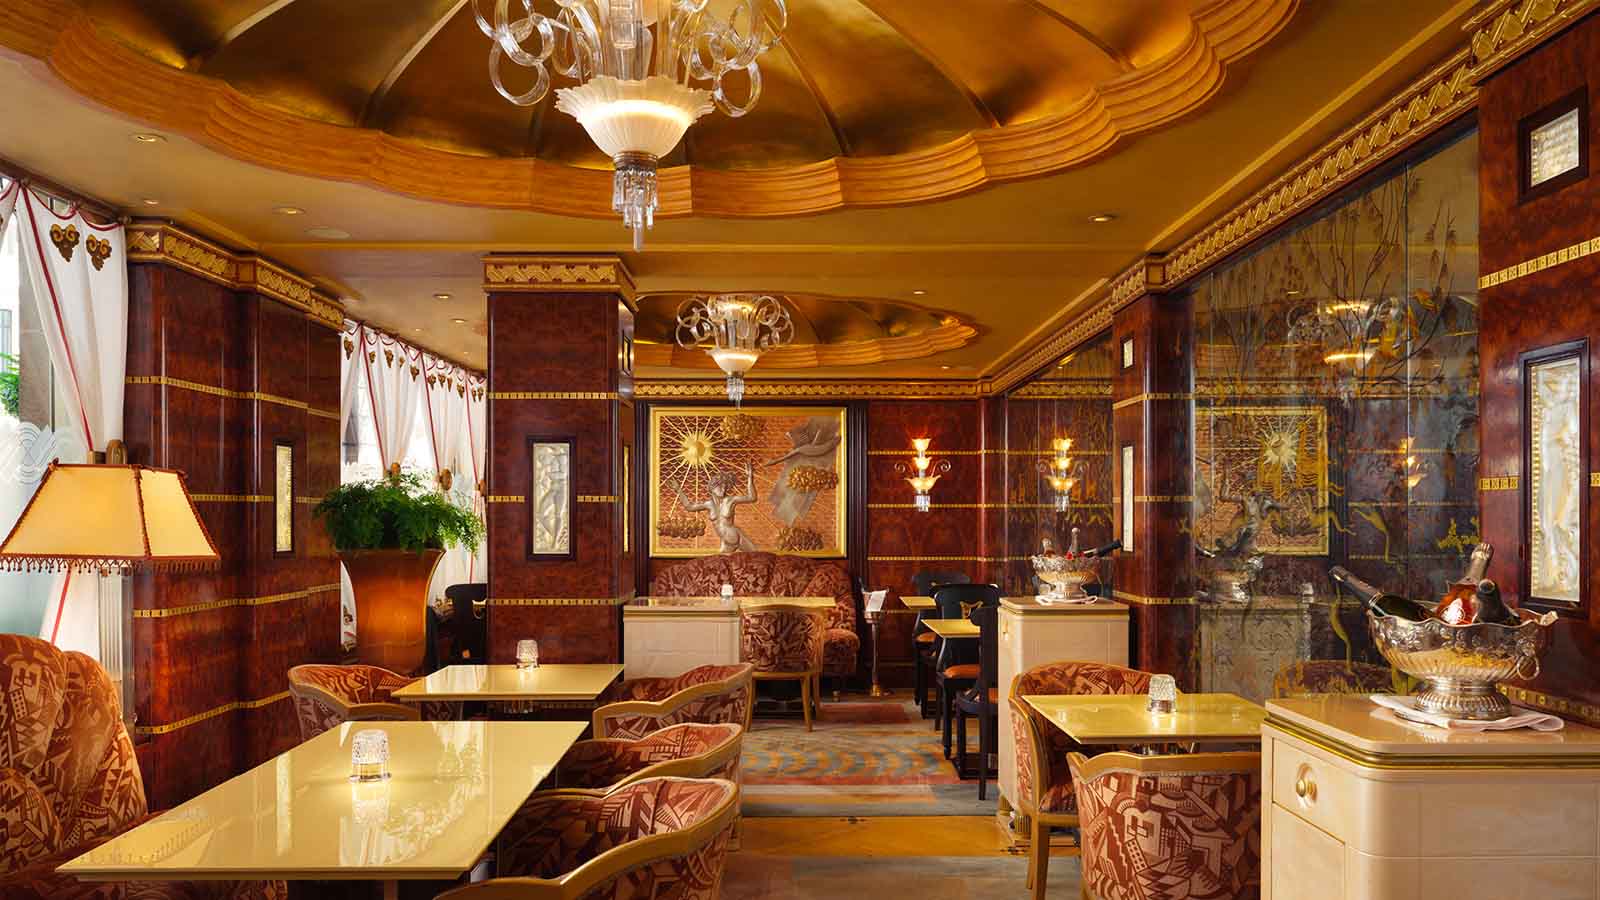   Ritz London: Hotel Stay 